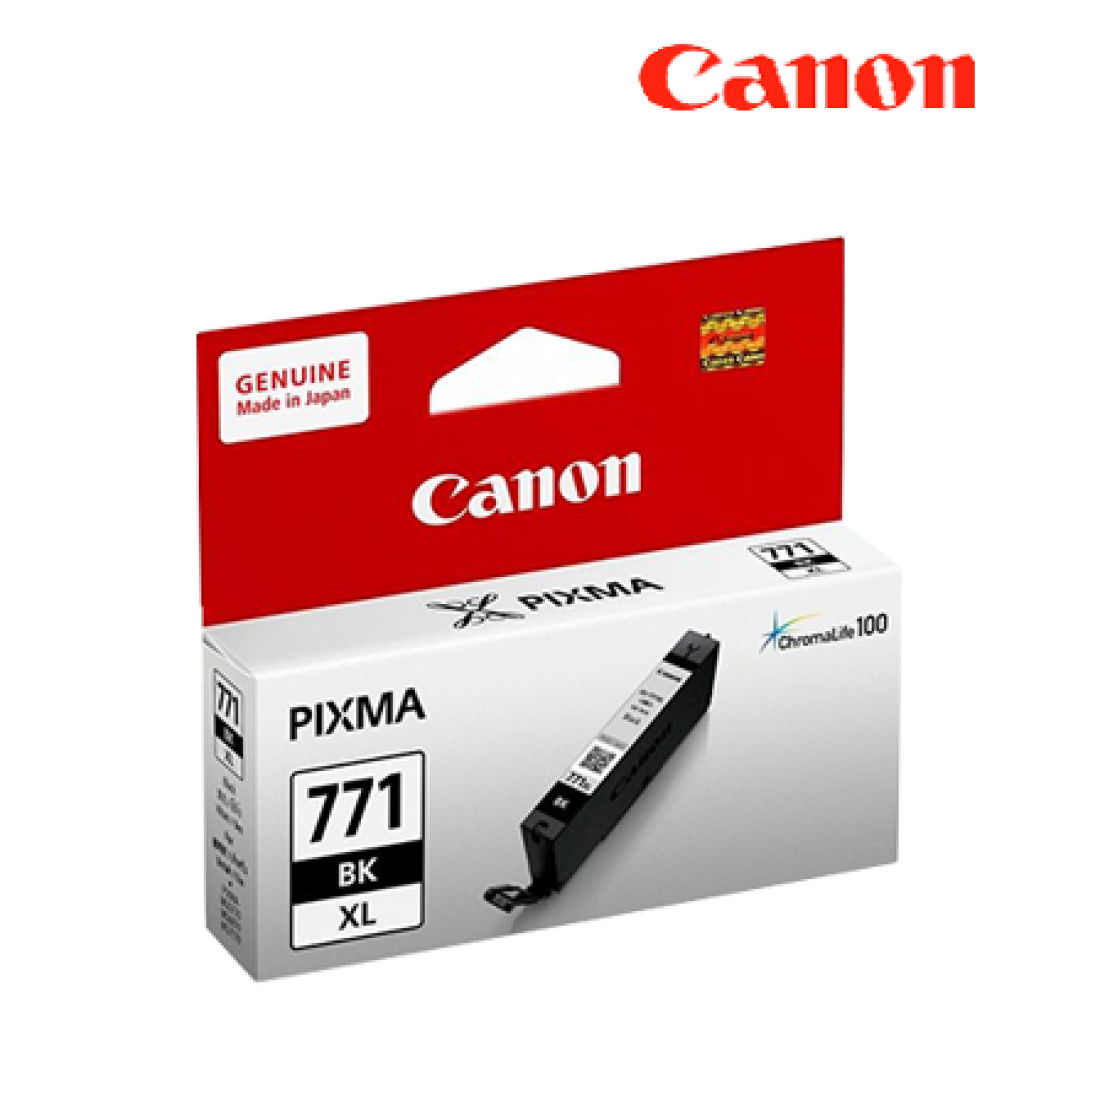 [Clearance] Canon CLI-771 XL Black Dye Ink - MG5770,MG7770,TS5070,TS8070